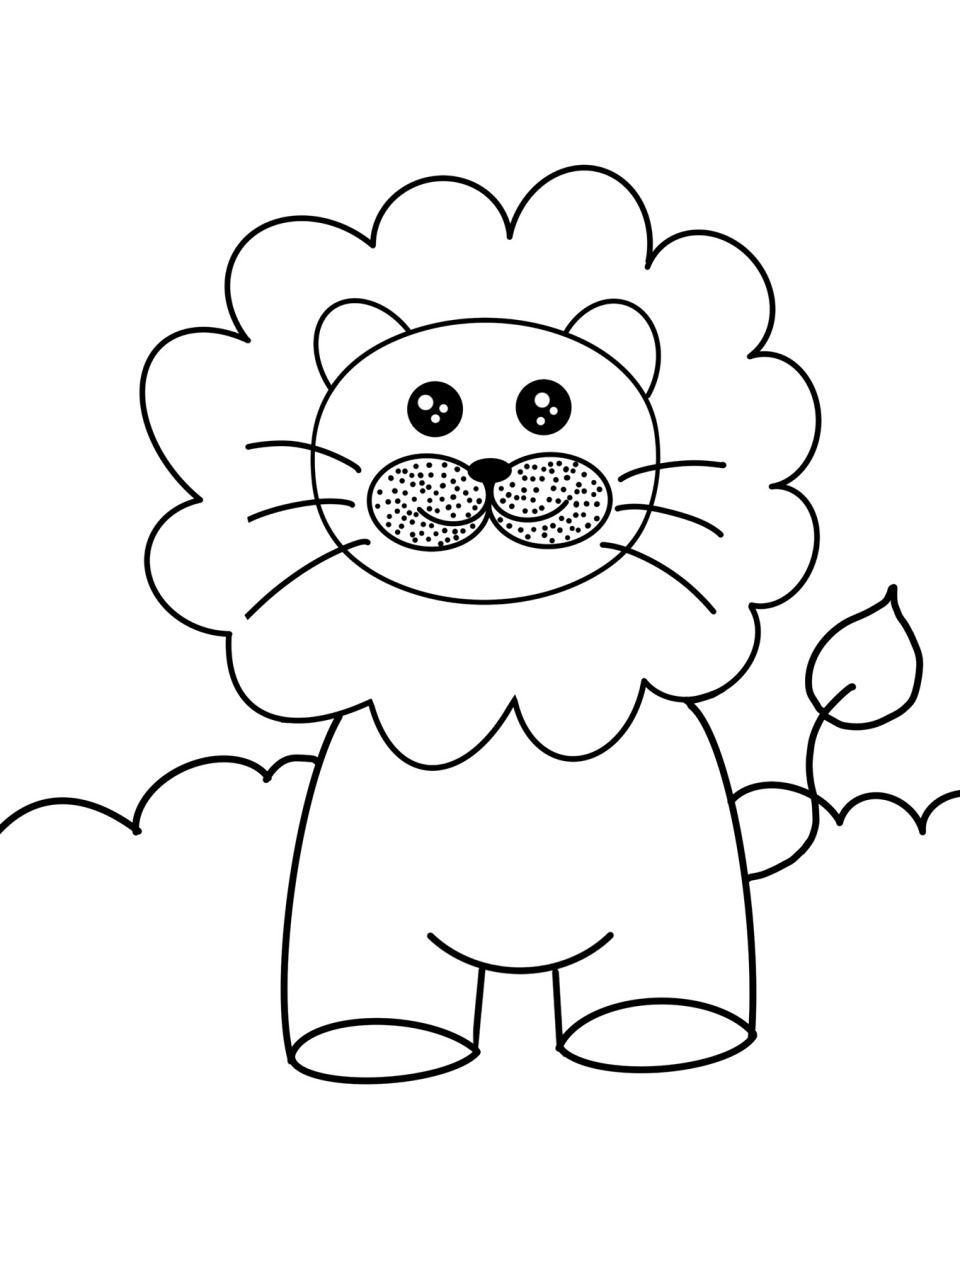 可爱的小狮子0315 创意画 儿童画 